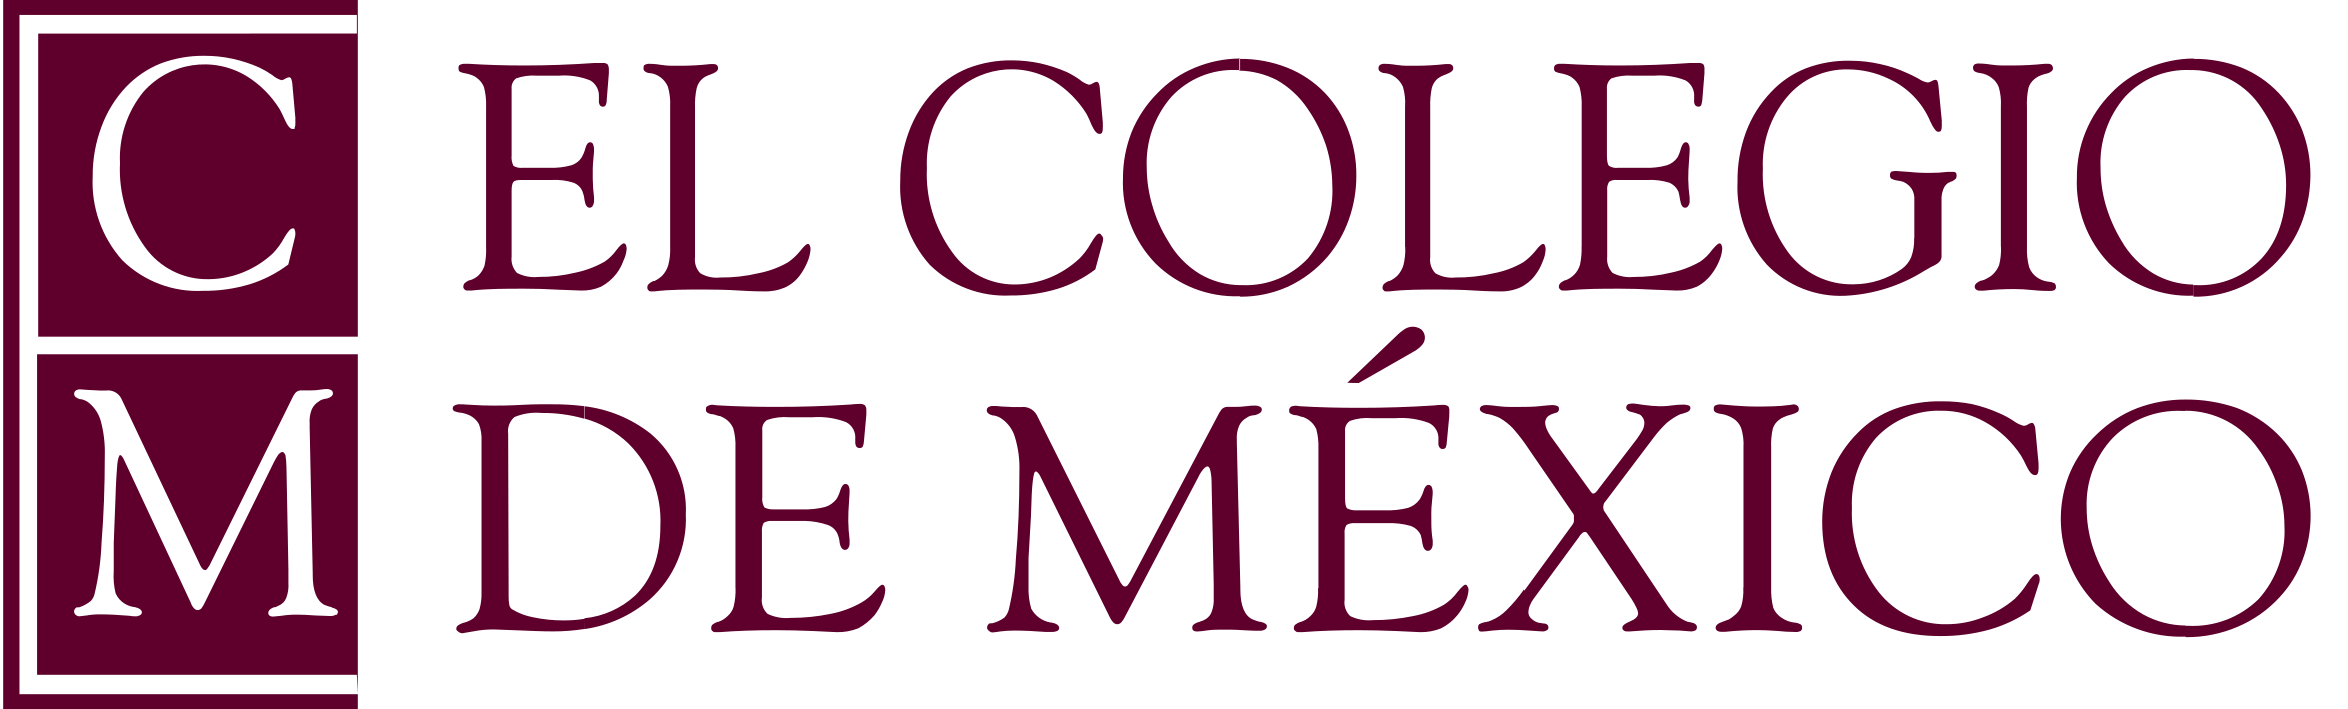 El Colegio de México